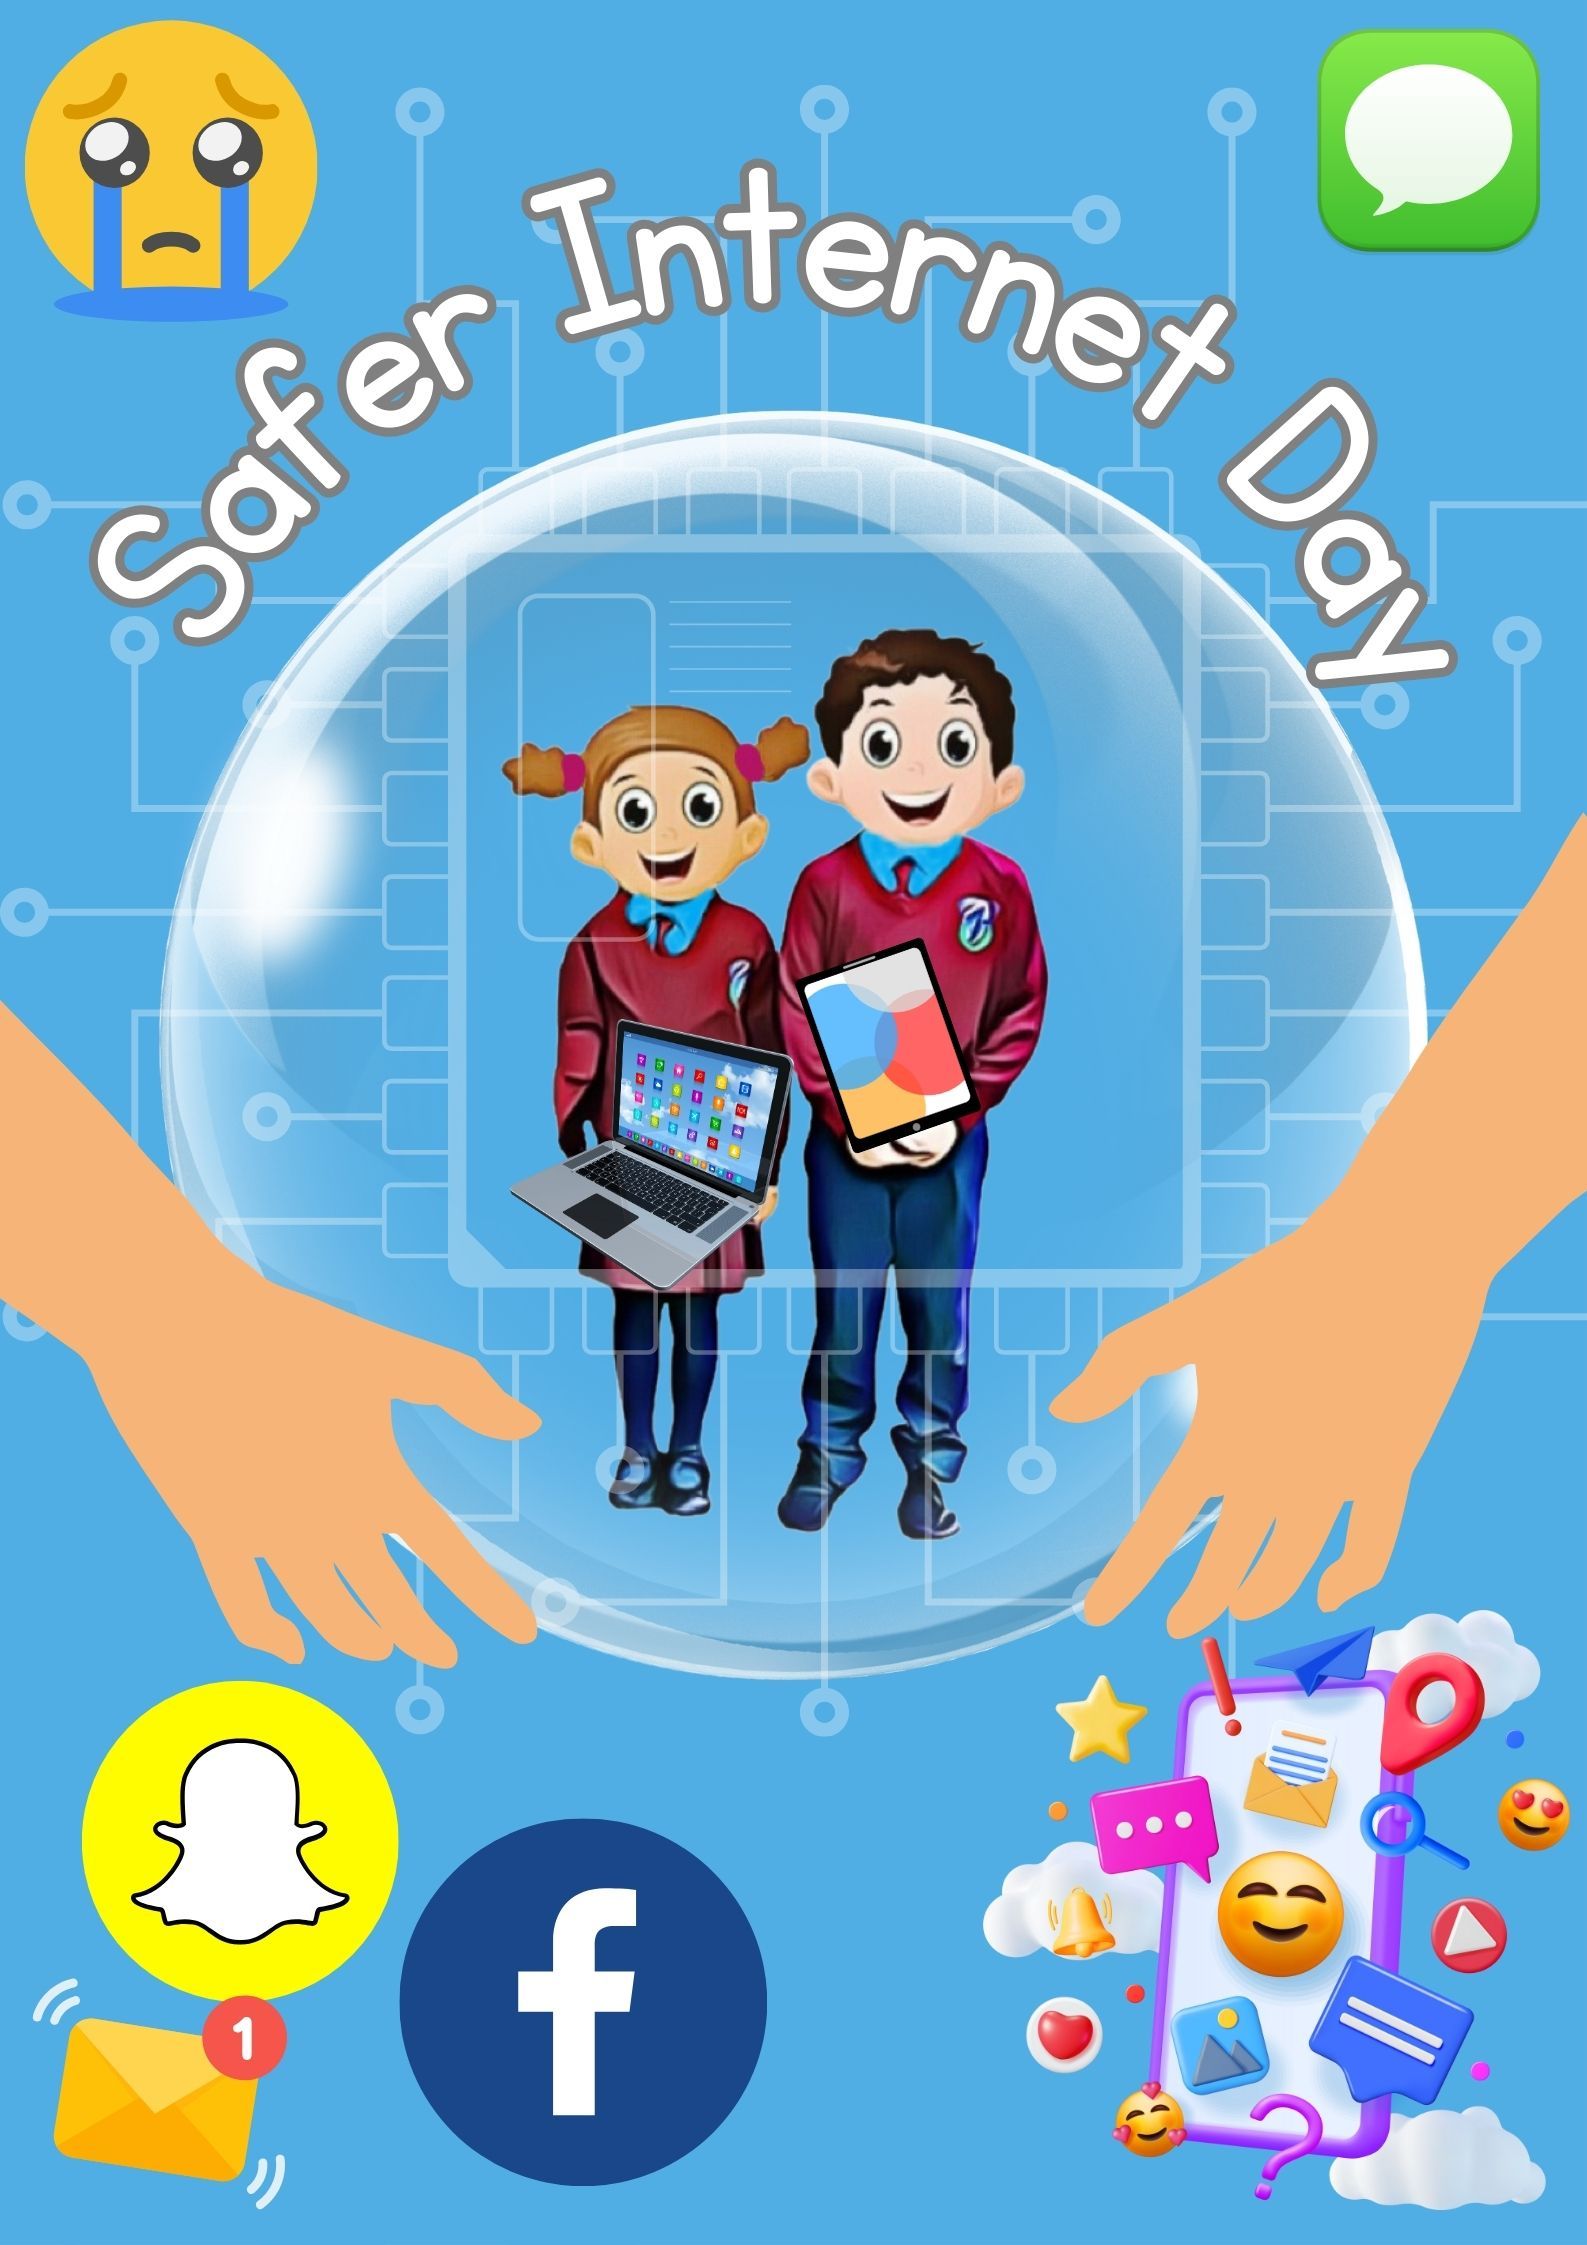 Safer Internet Day Parent Workshop Registration